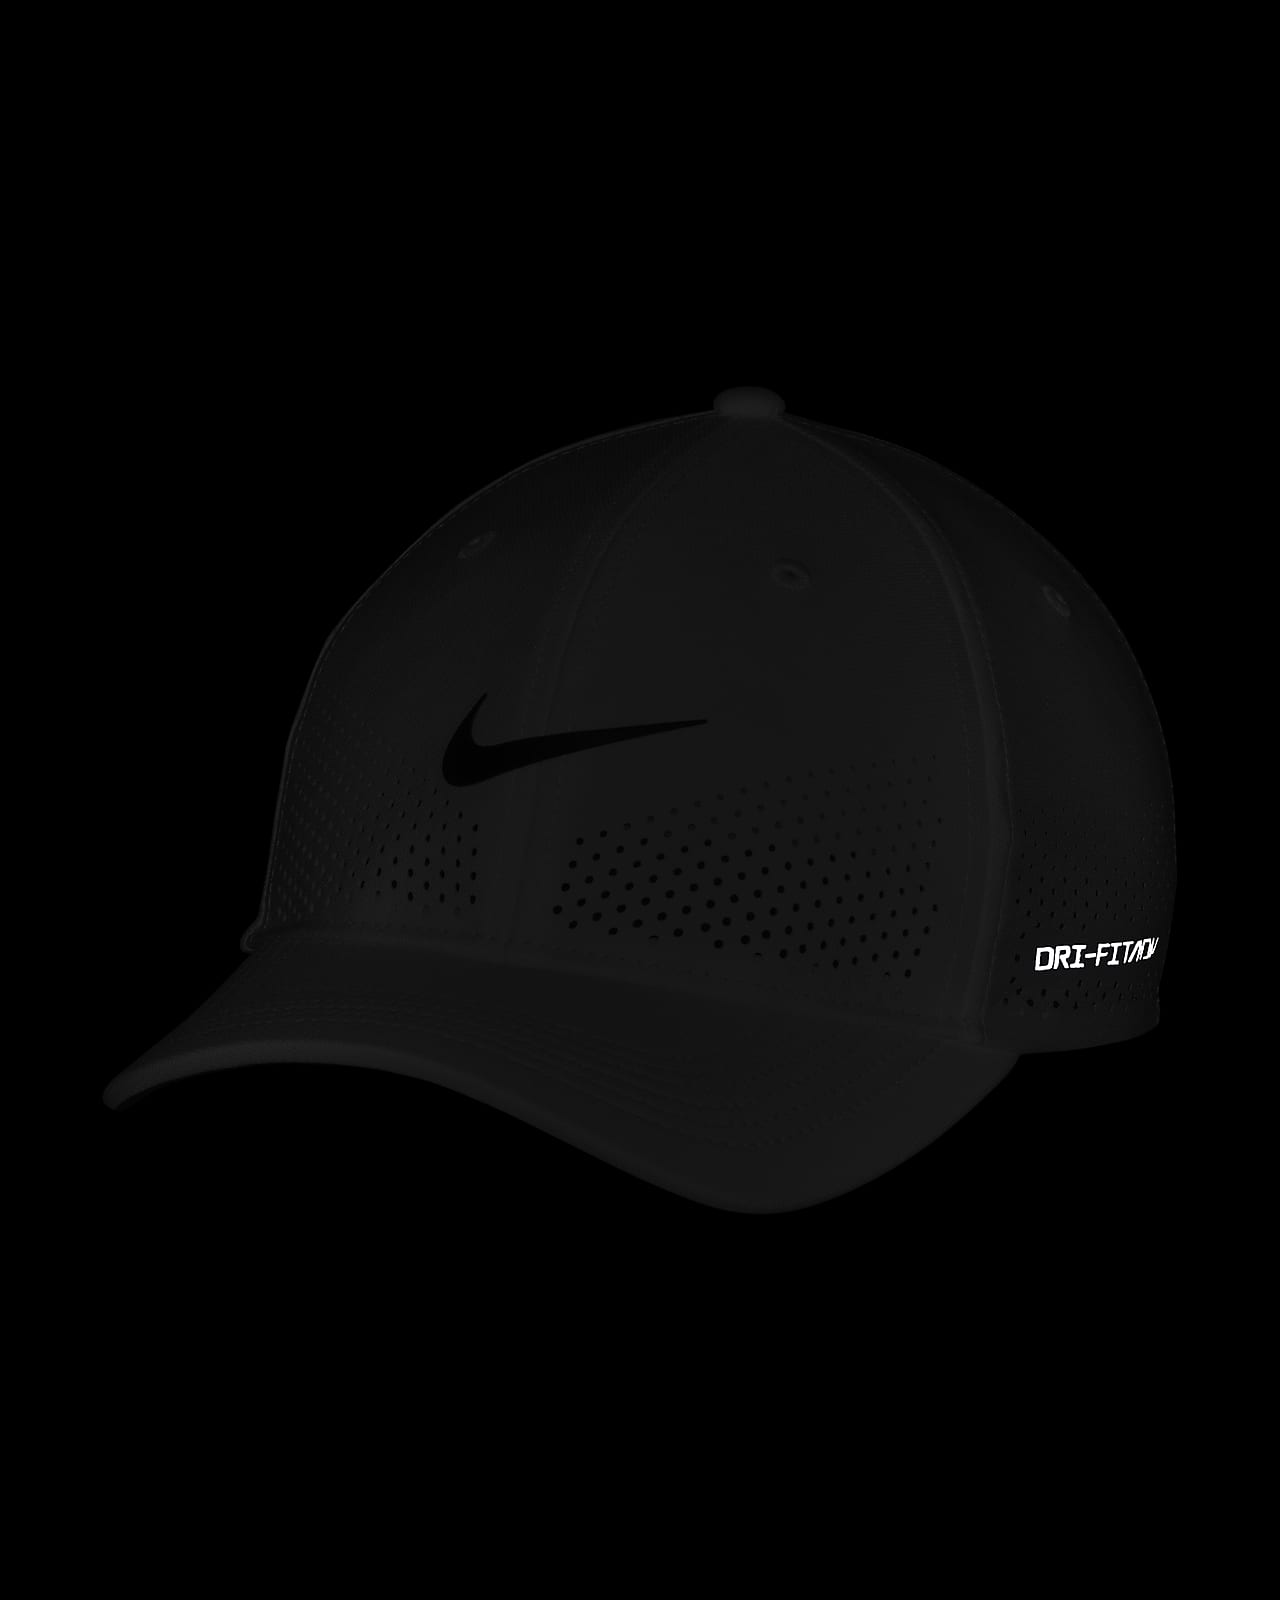 SwooshFlex Structured ADV Cap. Rise Dri-FIT Nike